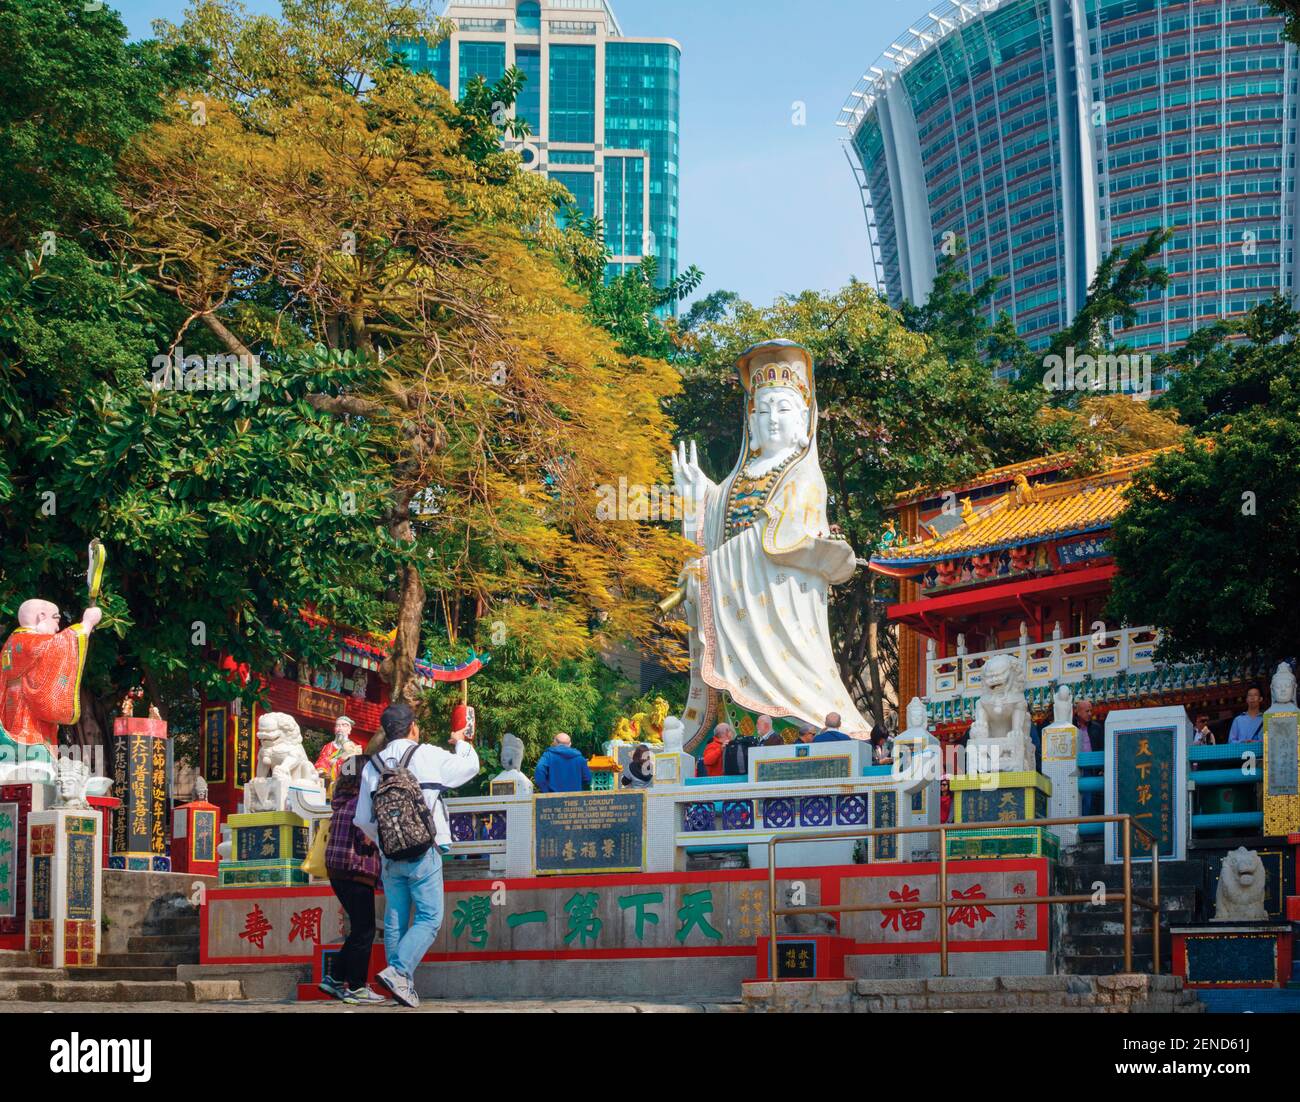 Hongkong, China. Repulse Bay. Besucher der Hong Kong Life Saving Society sehen sich ihre Sammlung von heiligen Statuen und Bildern an. Stockfoto